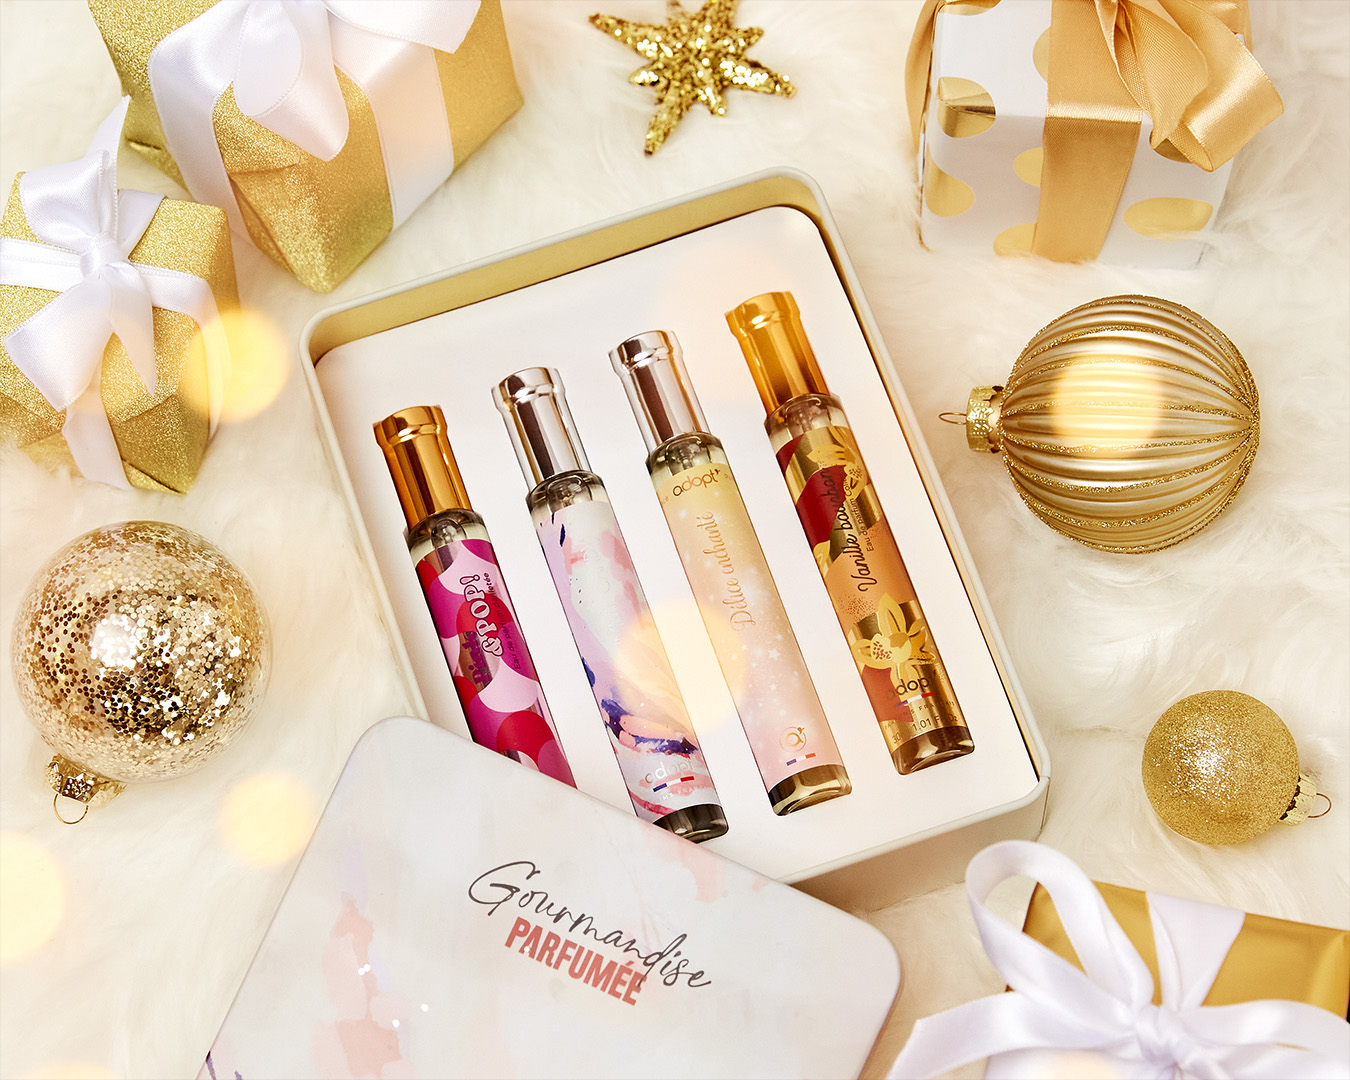 Coffrets Parfums : Le cadeau de Noël idéal ! - adopt